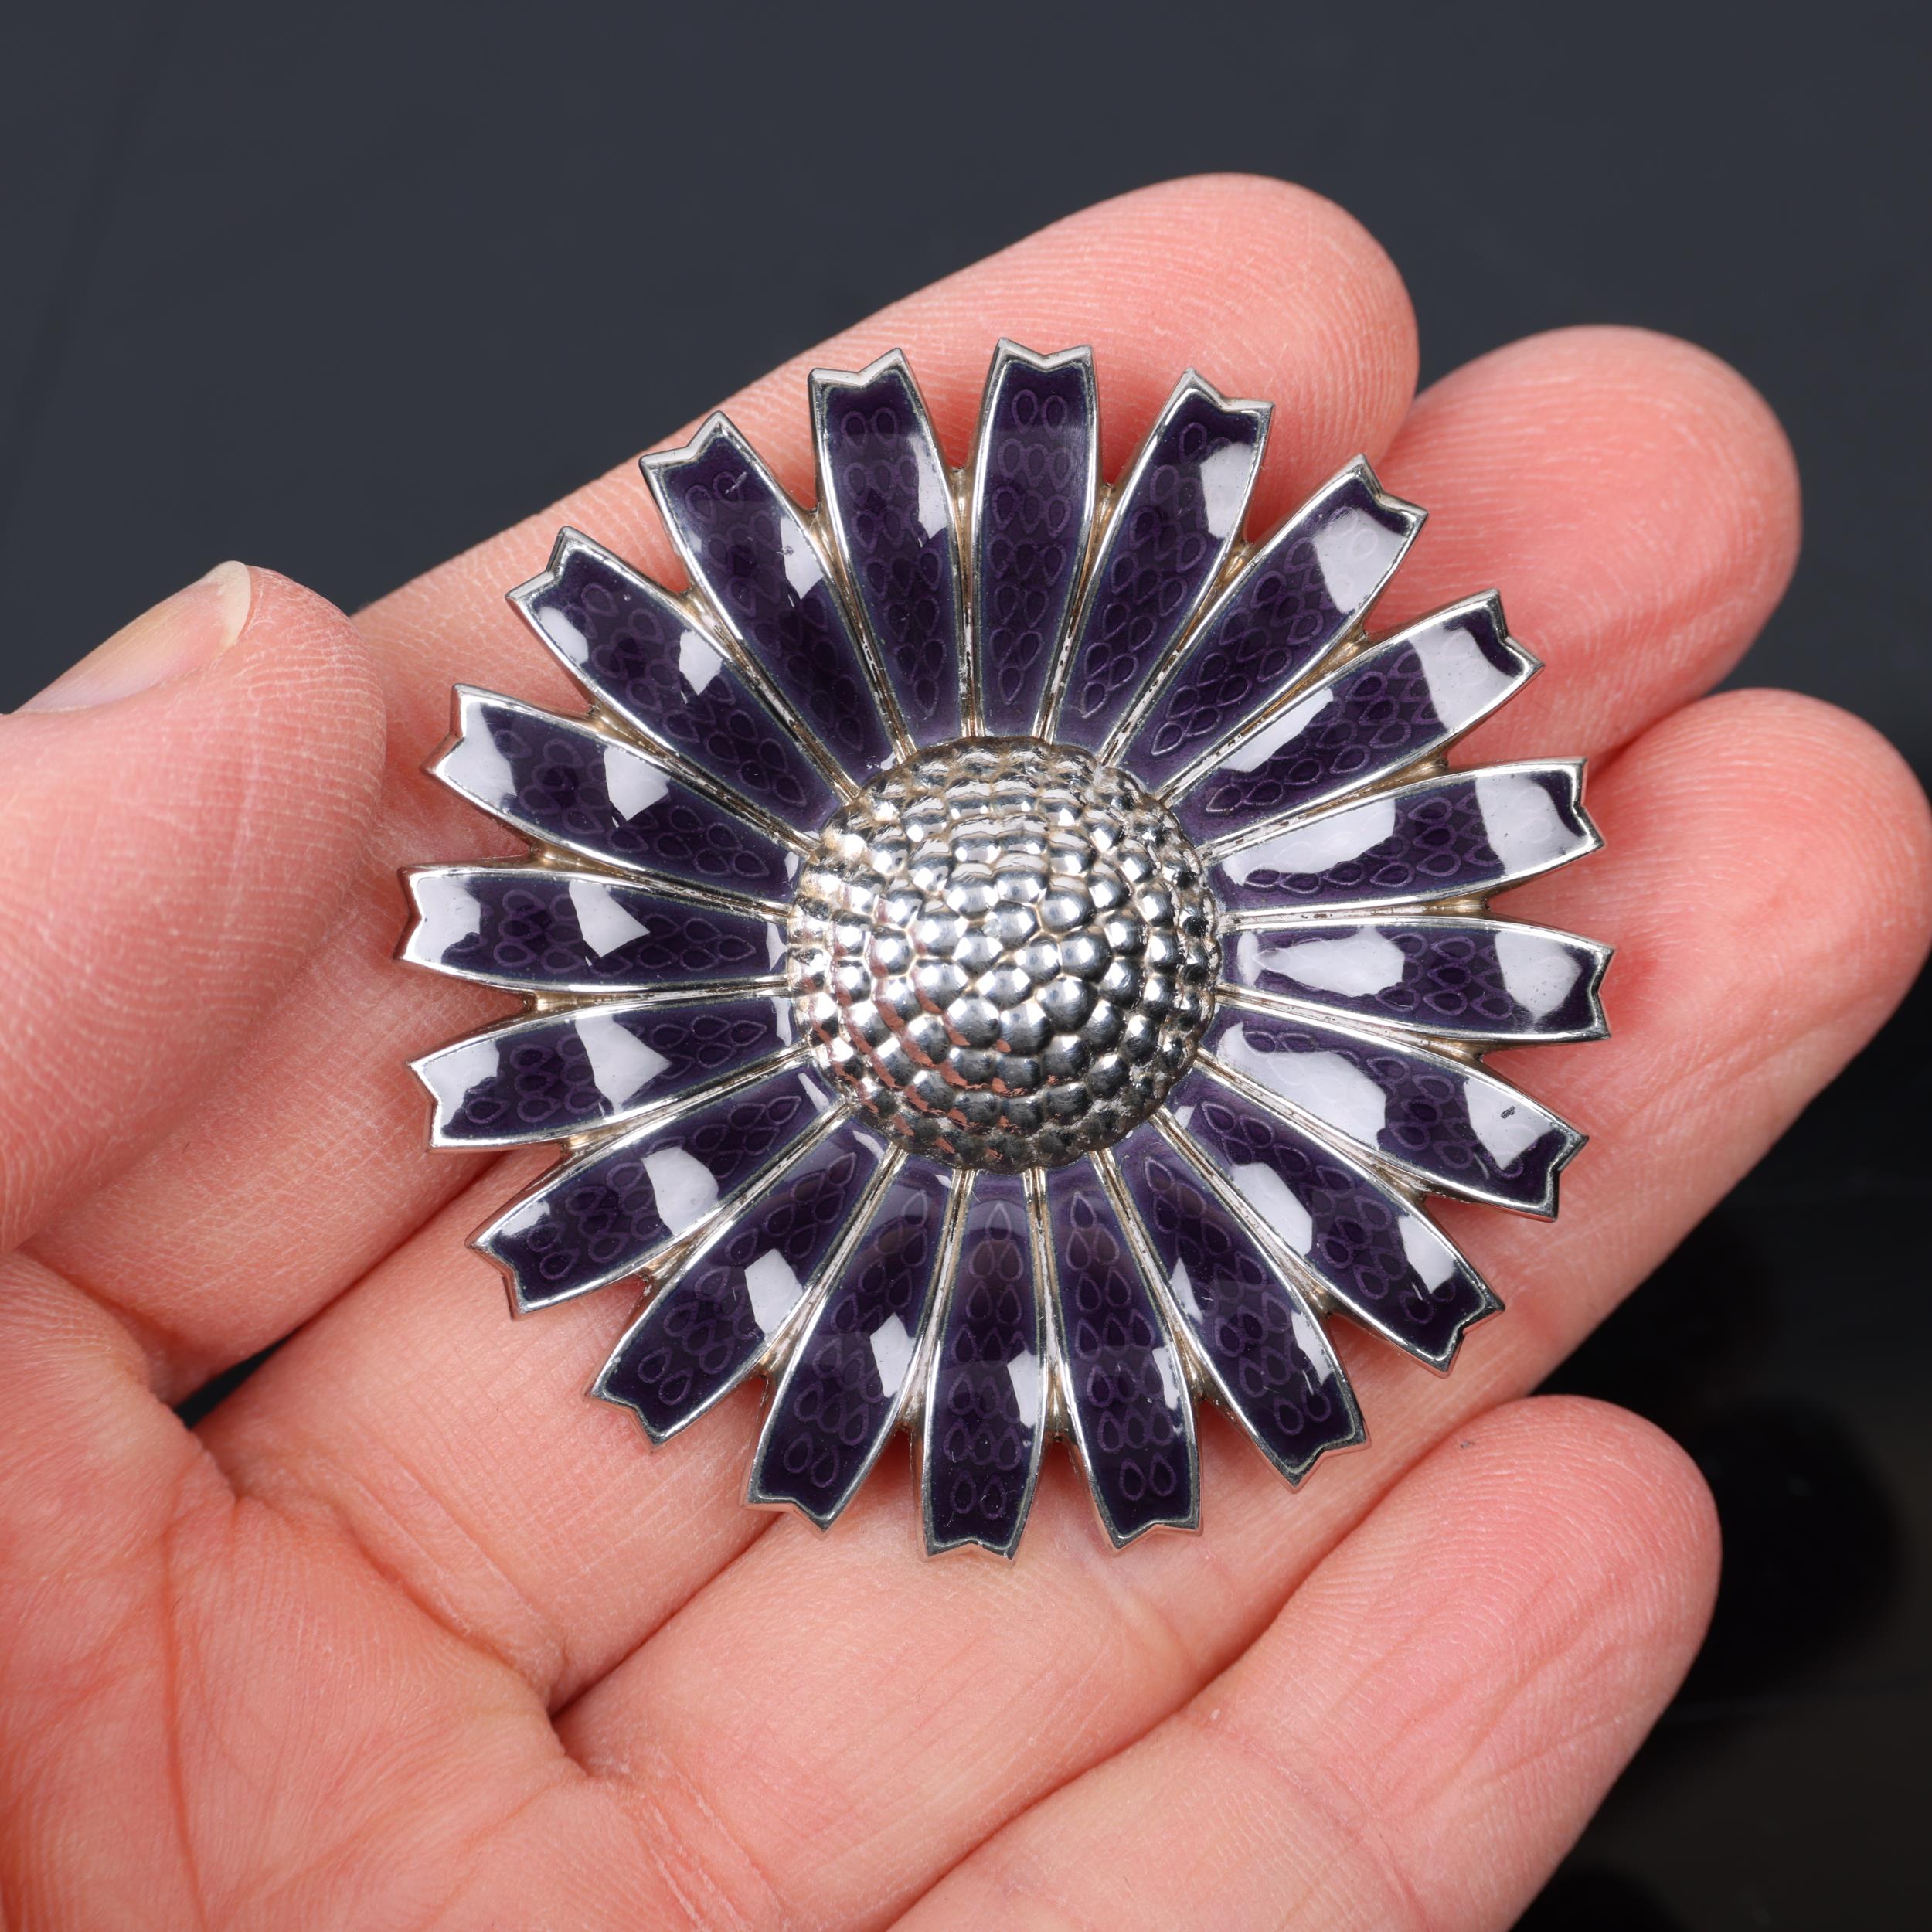 GEORG JENSEN - a modern Danish sterling silver and purple enamel daisy pattern pendant/brooch, - Image 4 of 4